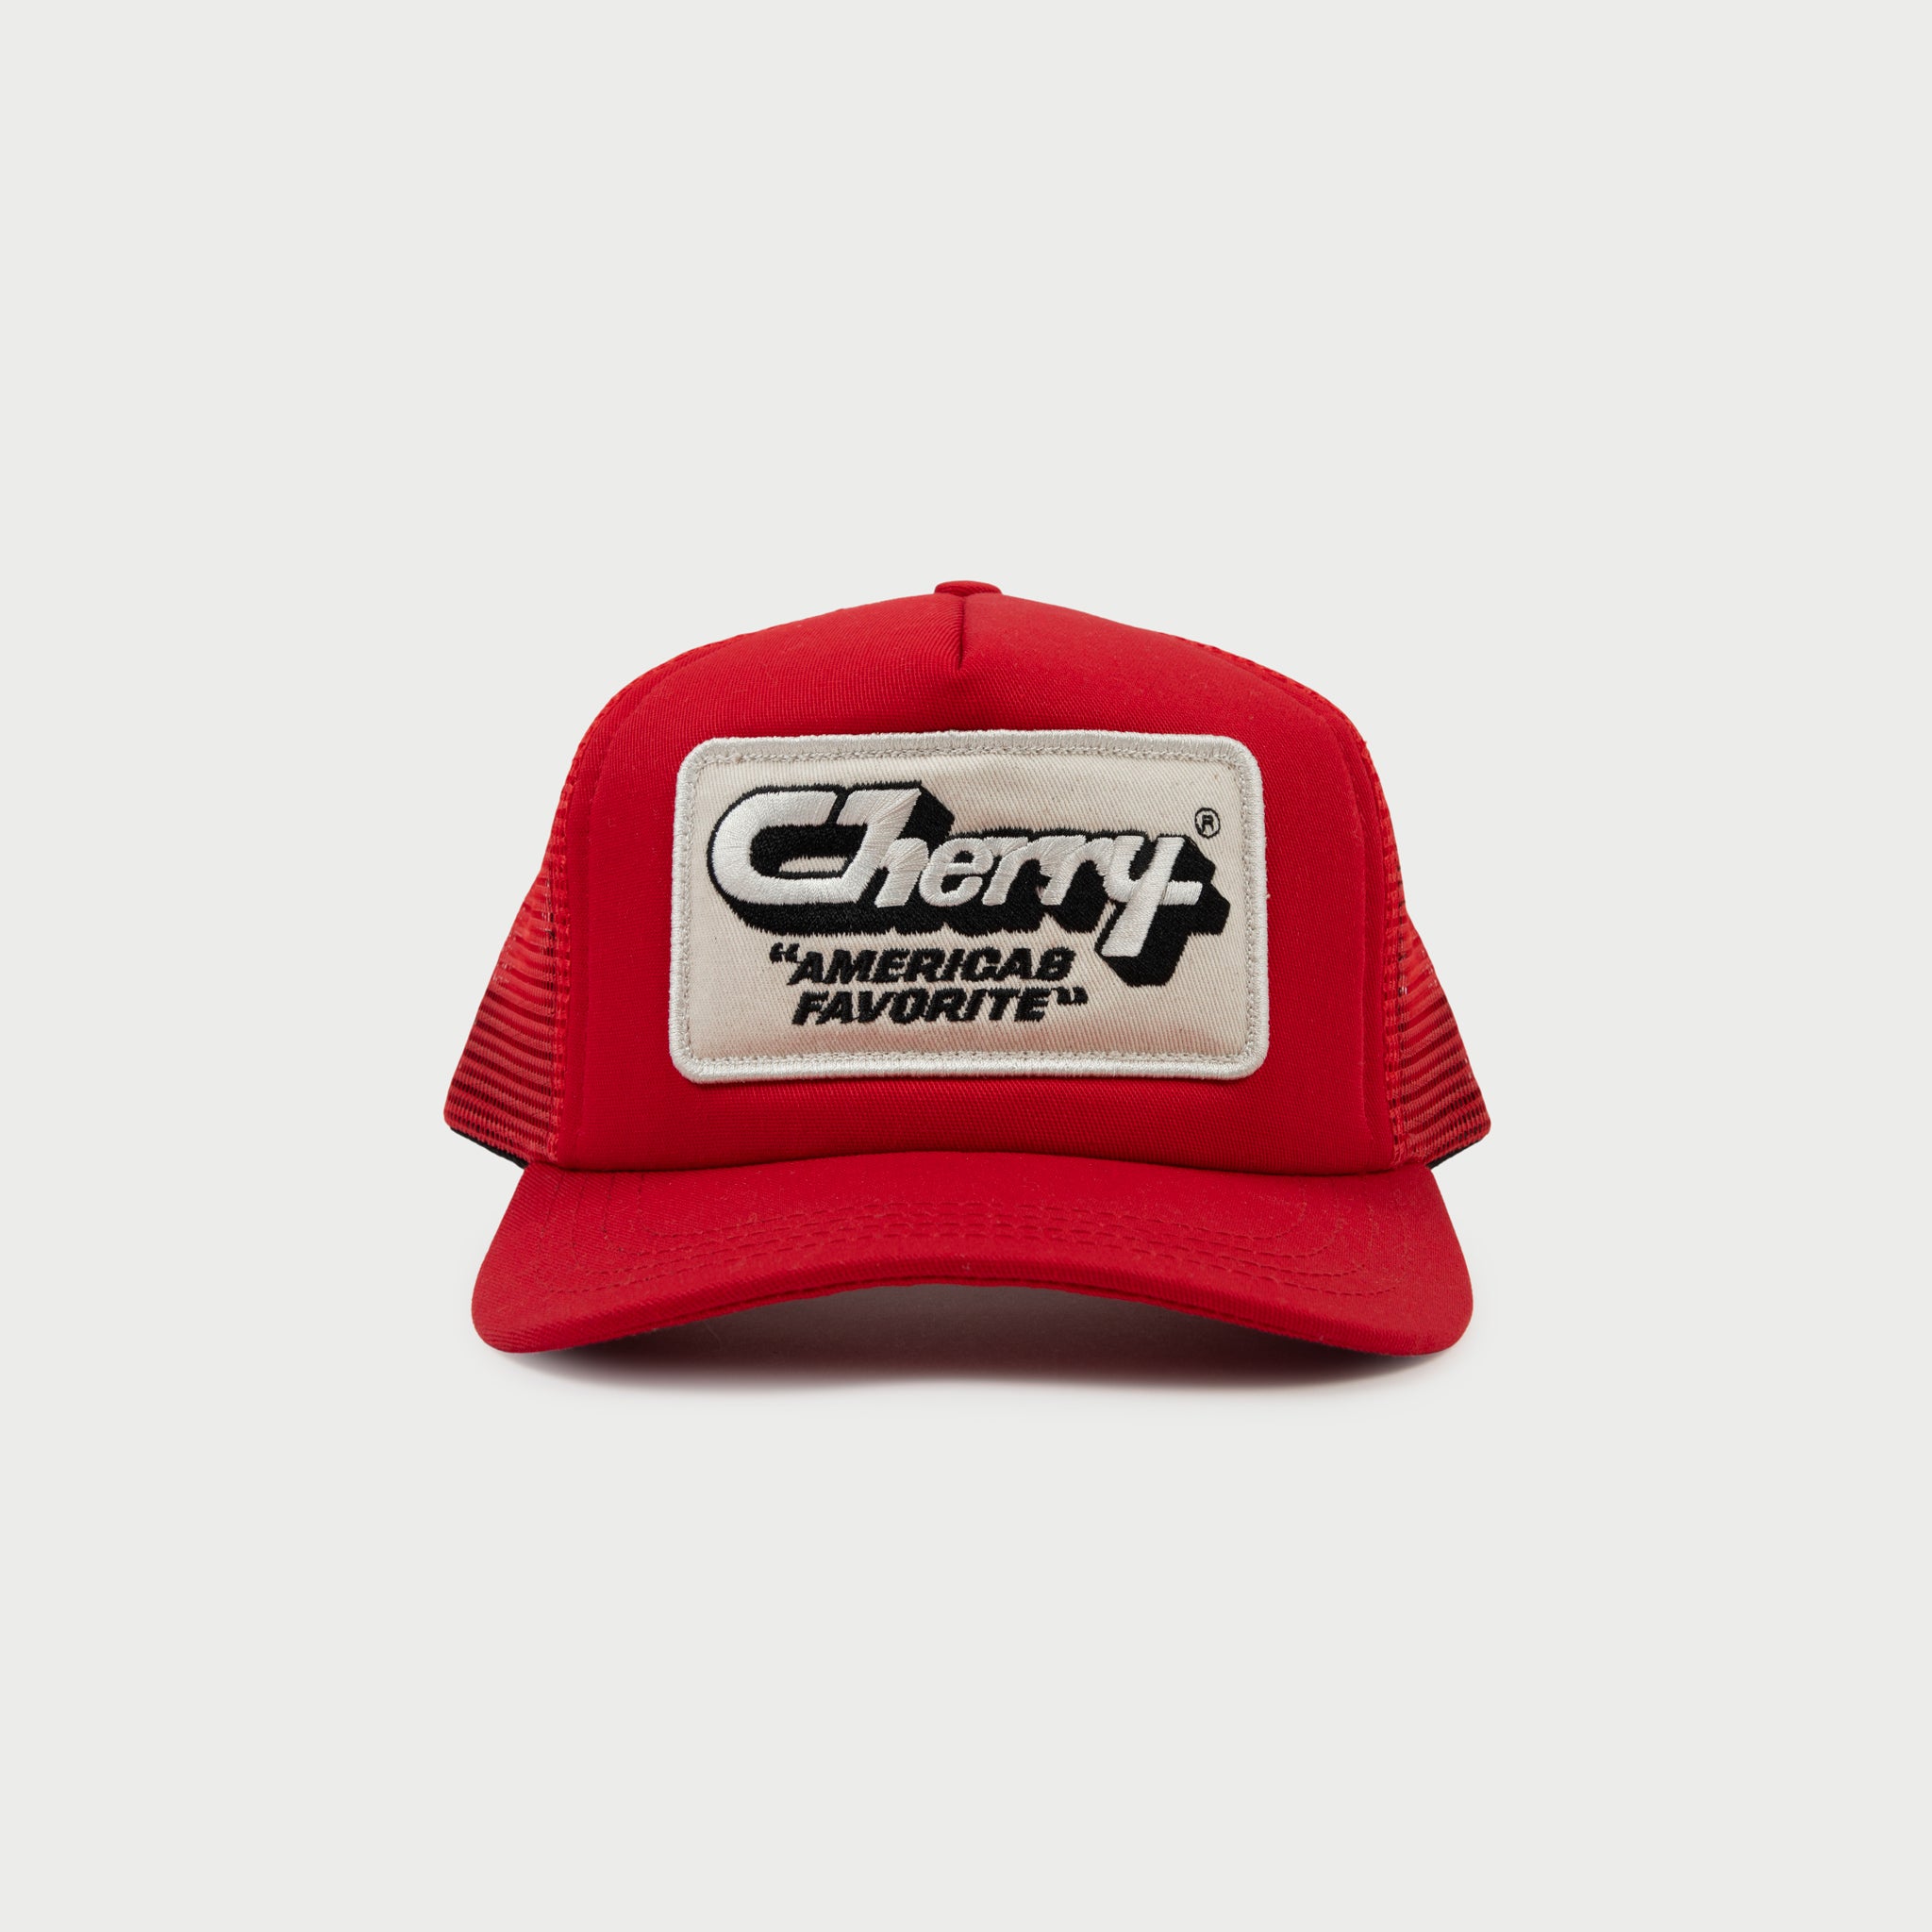 District Trucker Hat - Cherry Cola